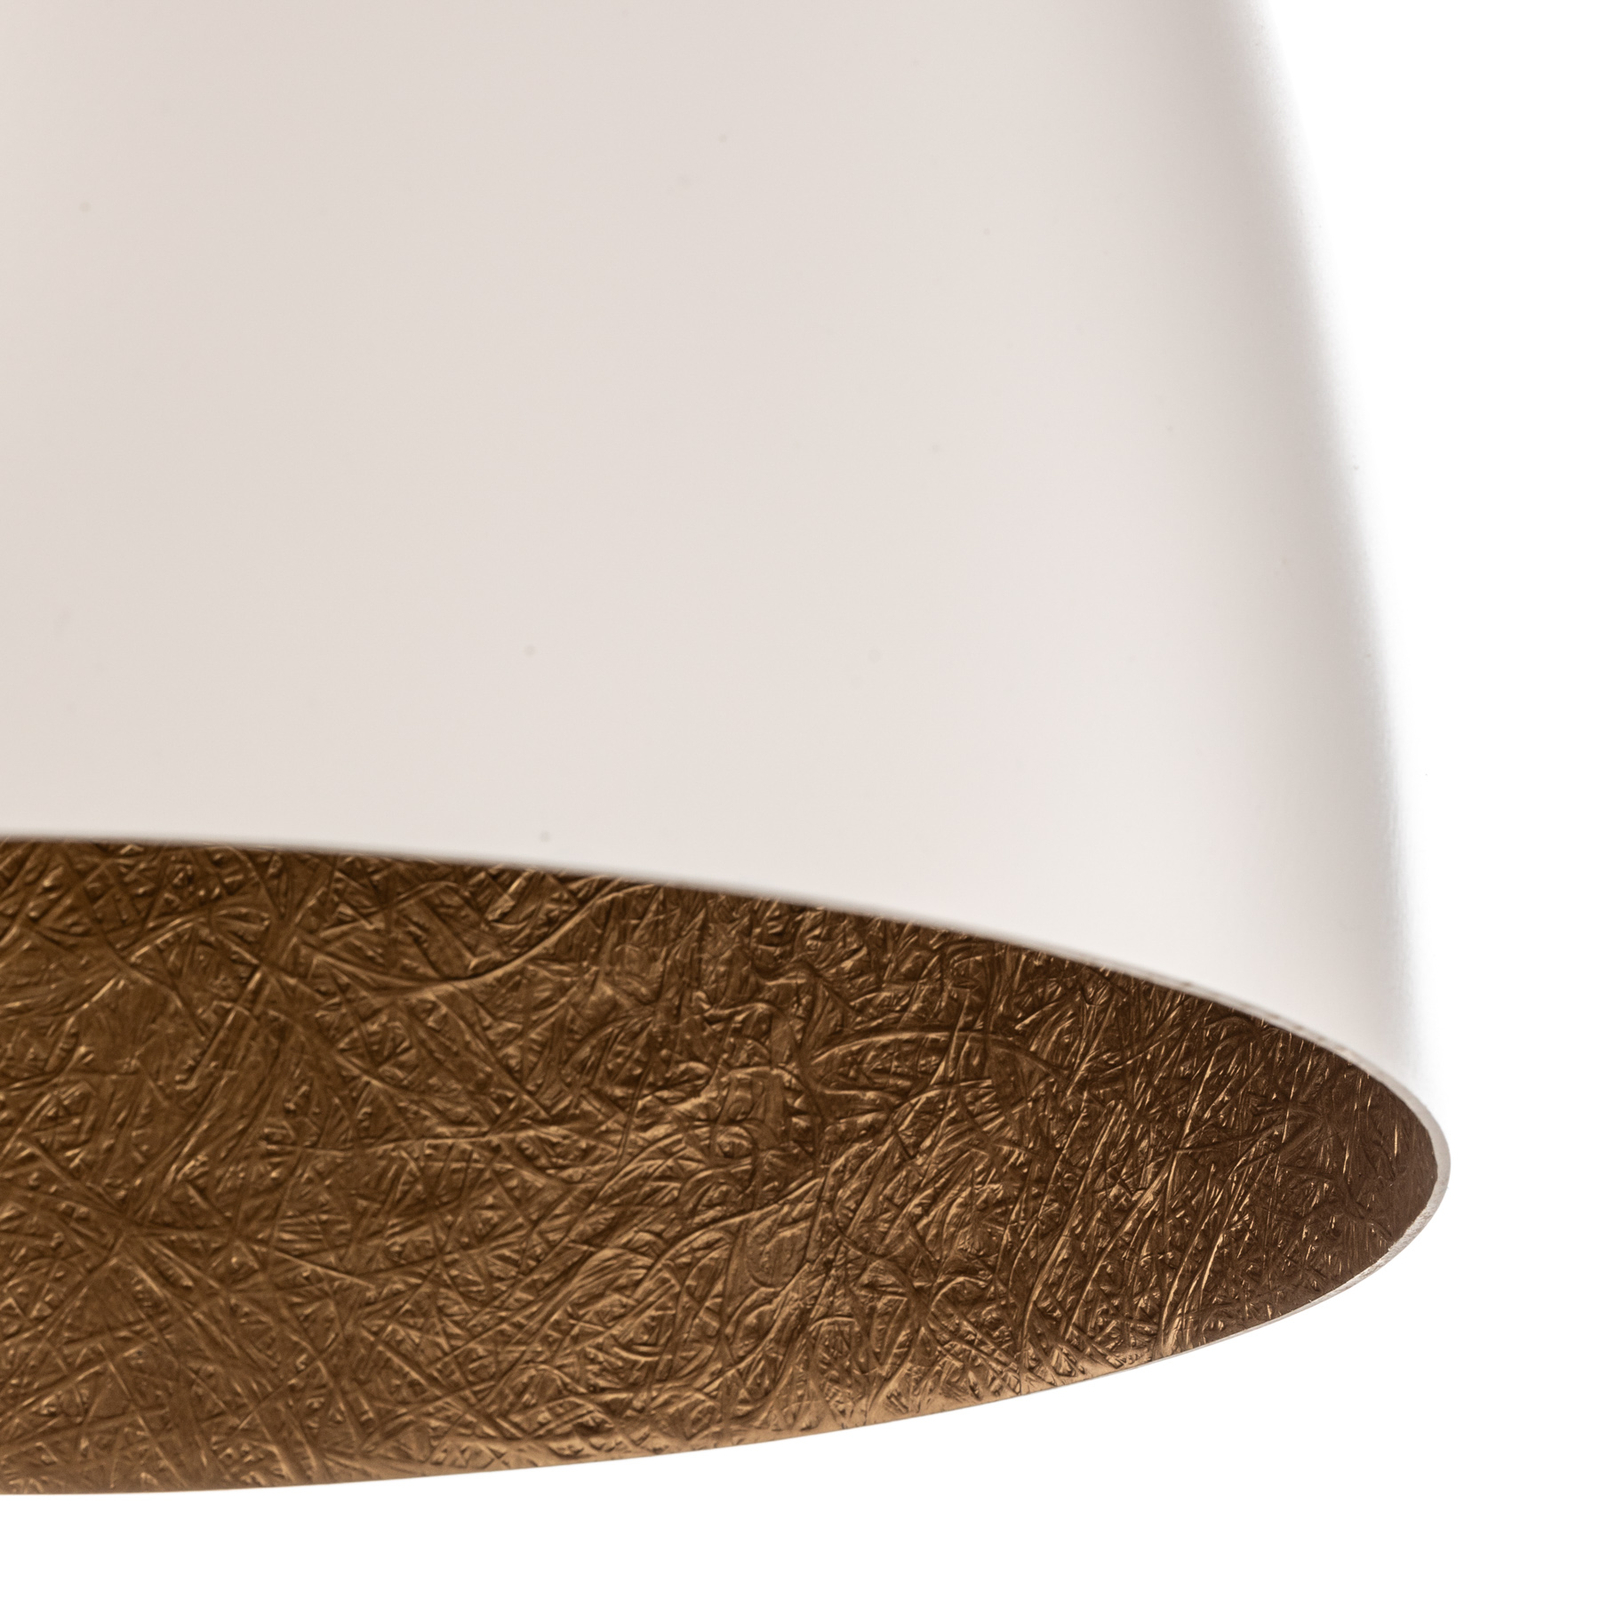 Kovové závěsné světlo Egg M, Ø 38 cm, bílé